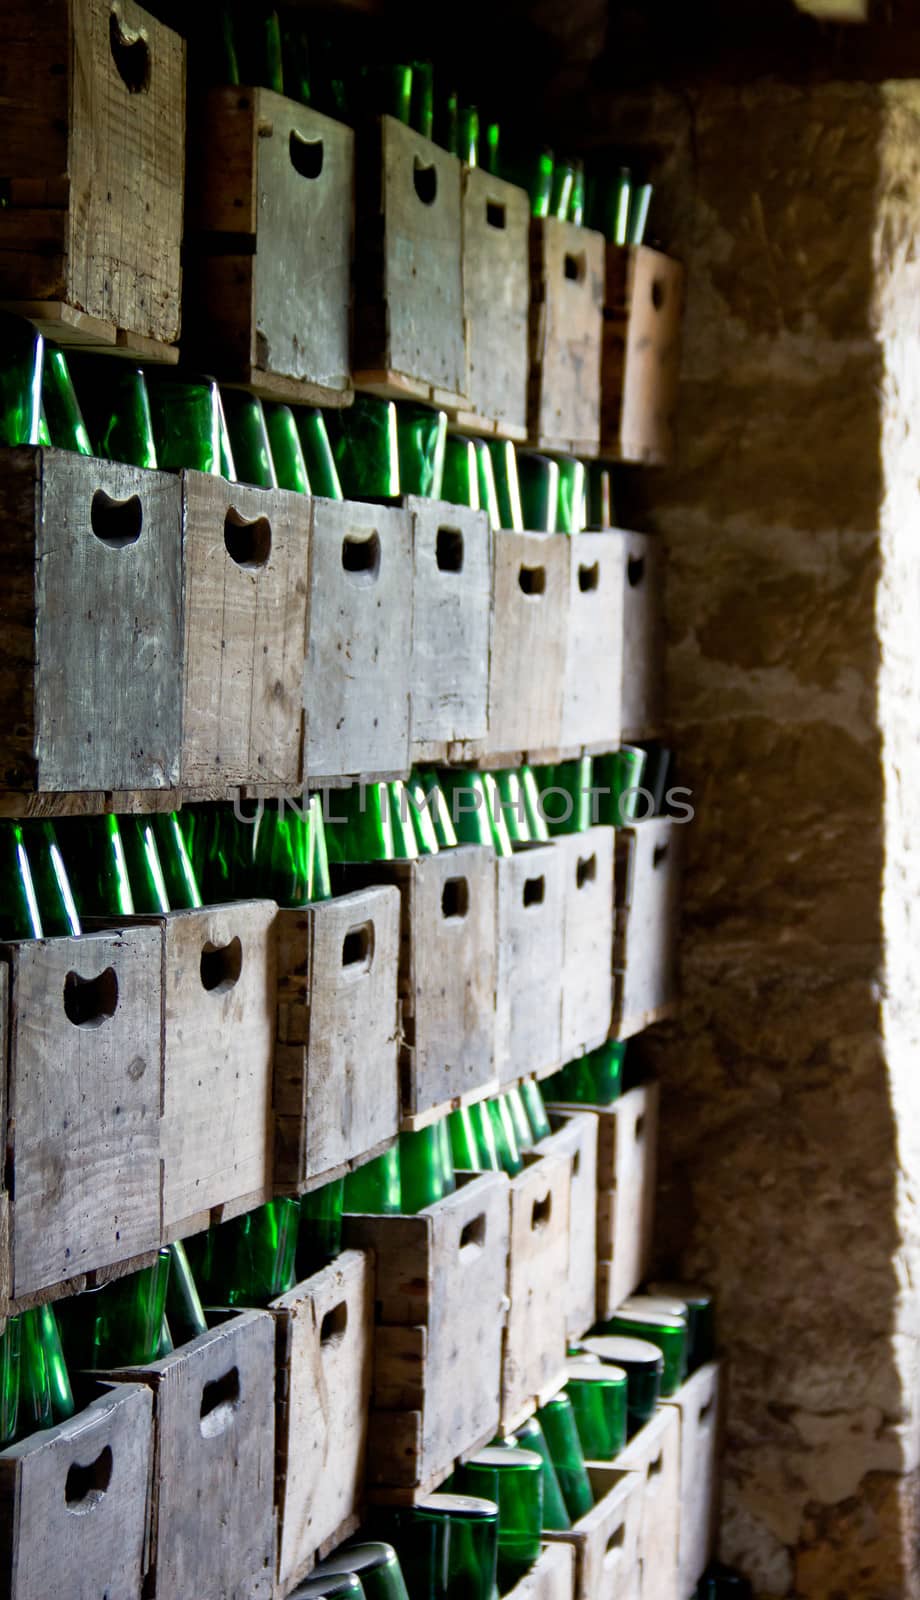 cider bottles in wooden boxes